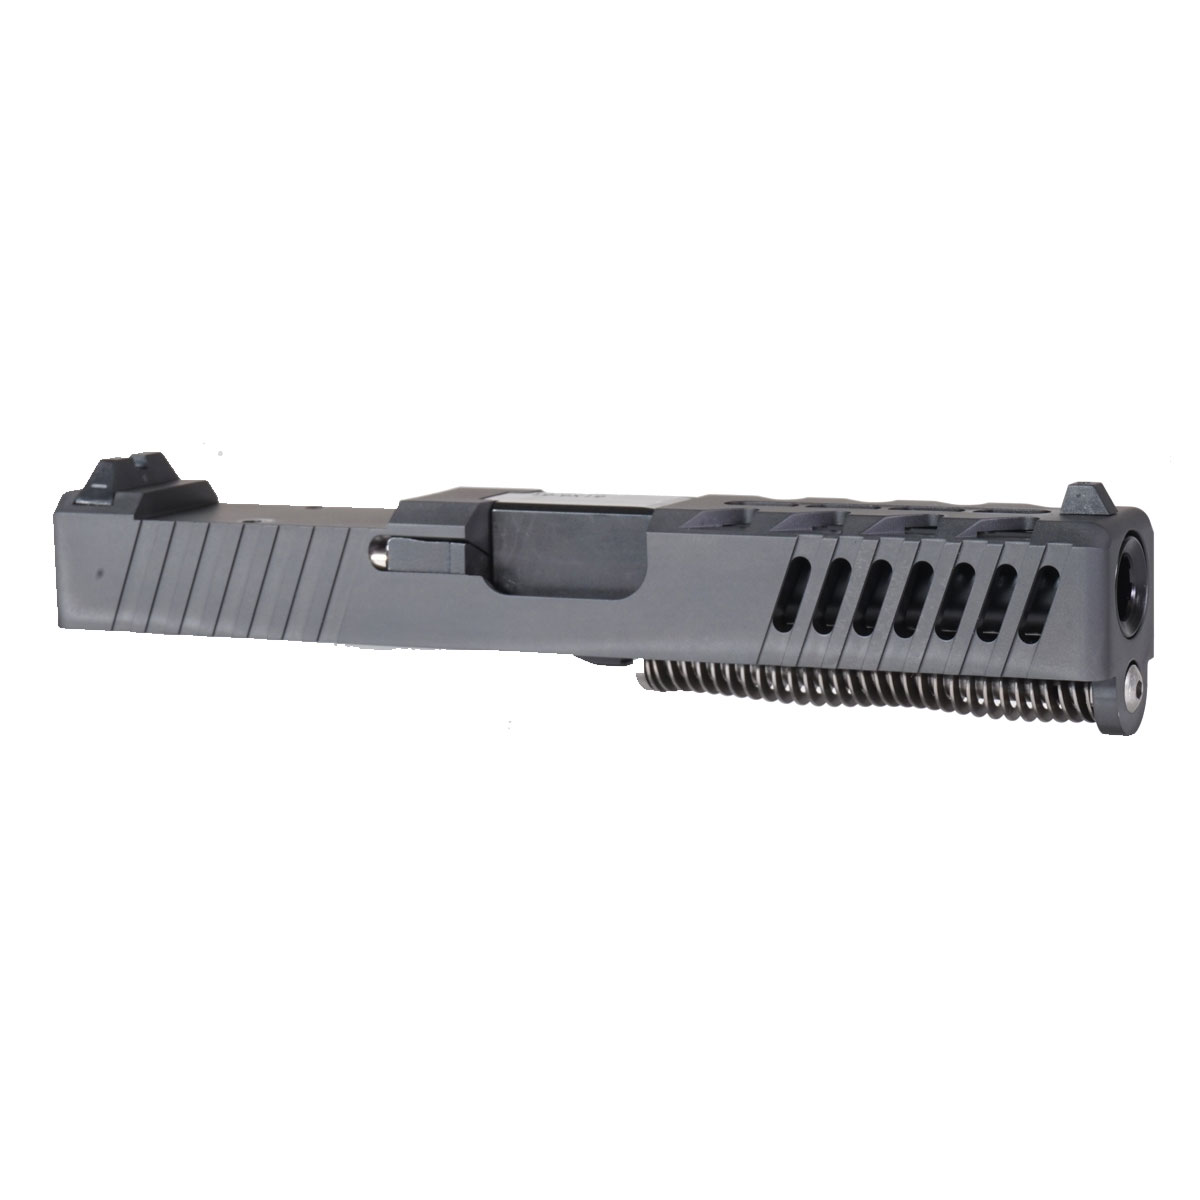 DD 'The Rasmussen' 9mm Complete Slide Kit - Glock 19 Gen 1-3 Compatible